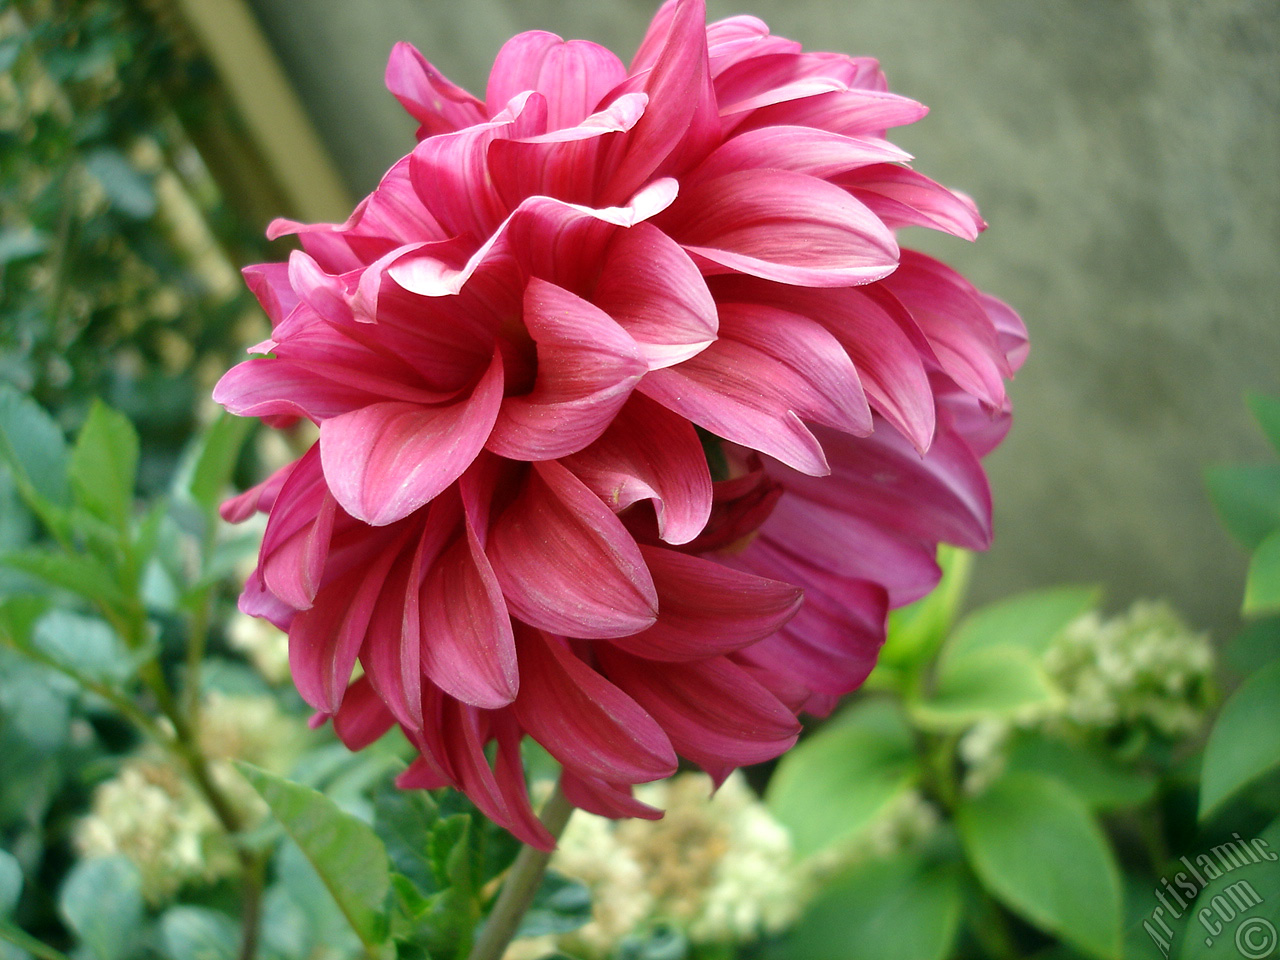 Dahlia flower.
